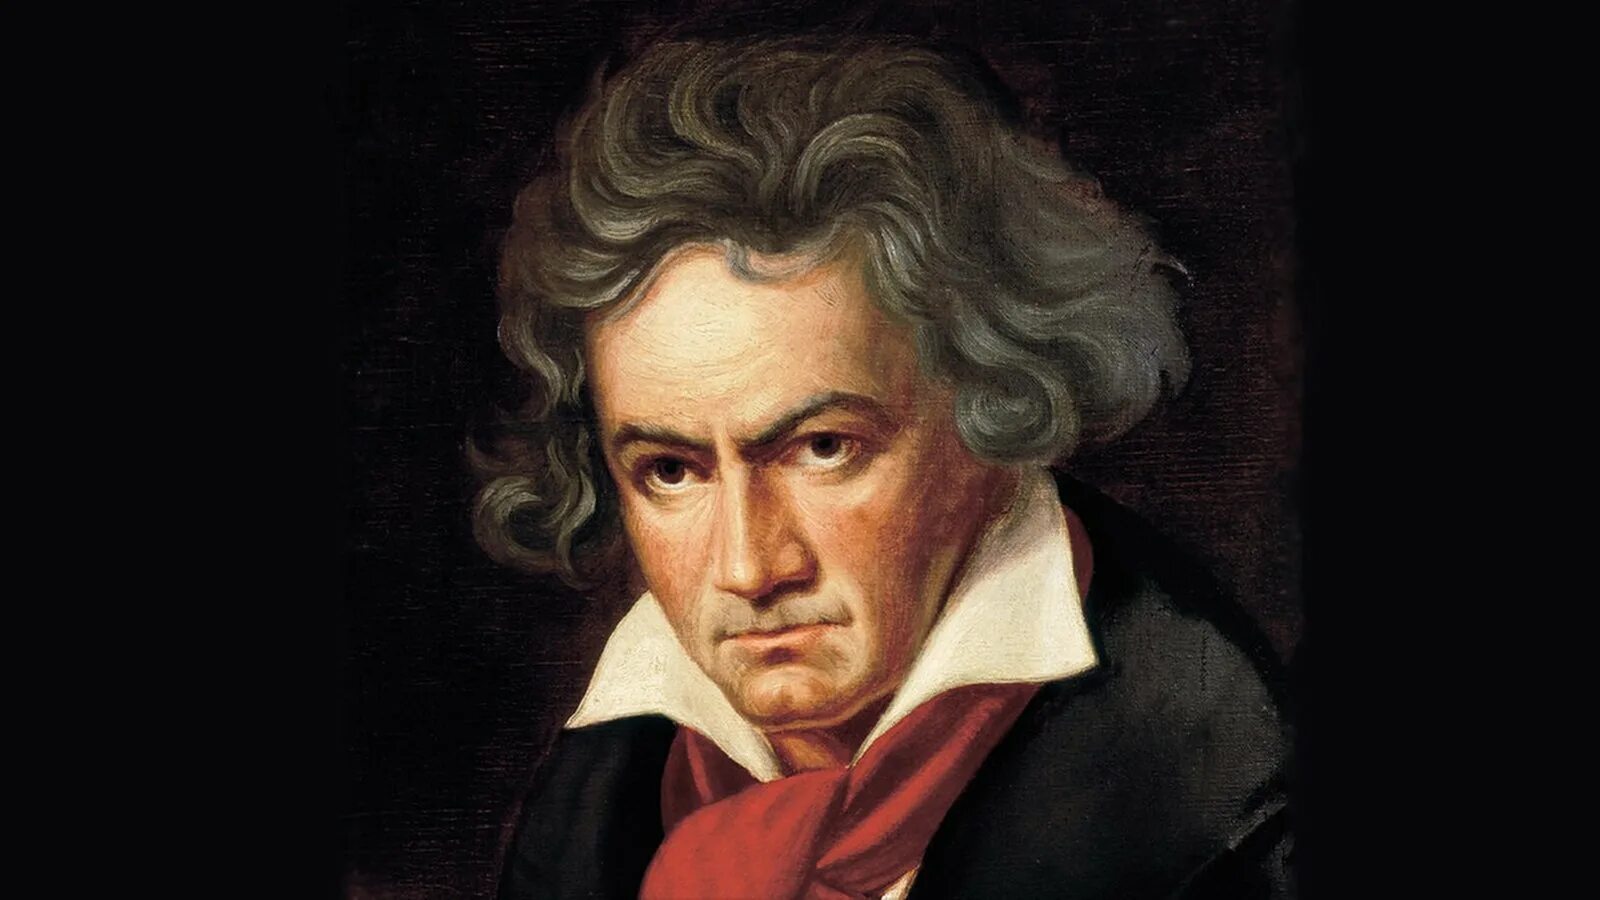 Бетховен портрет композитора. Л б бетховен